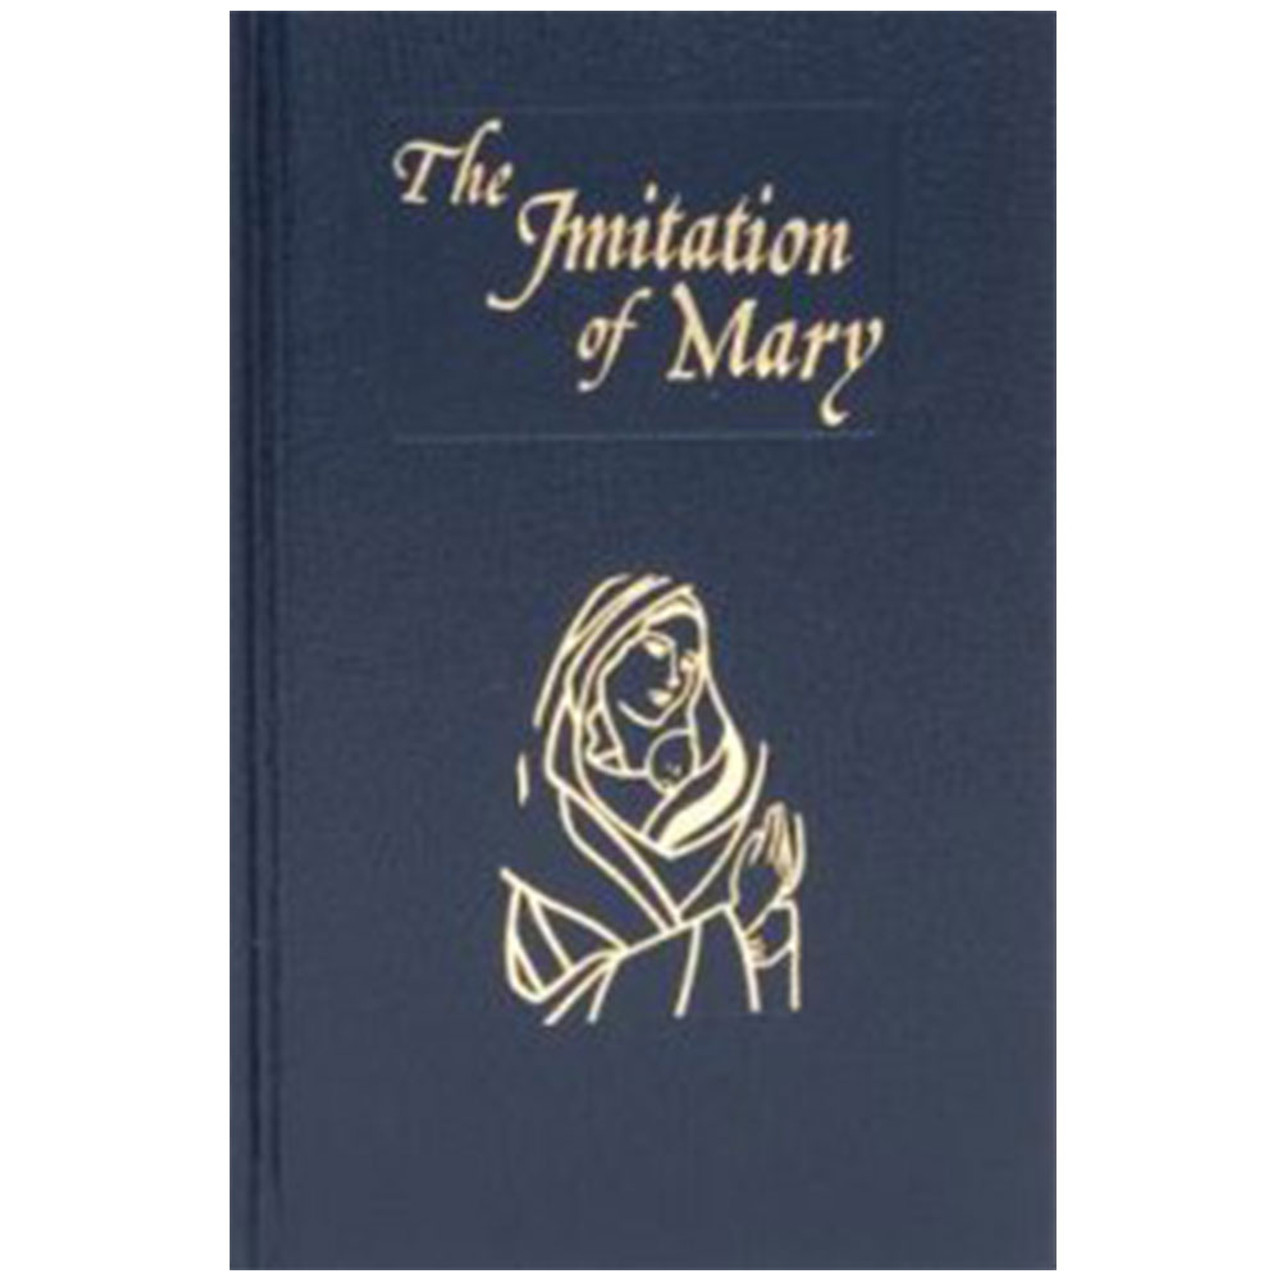 Imitation of Mary